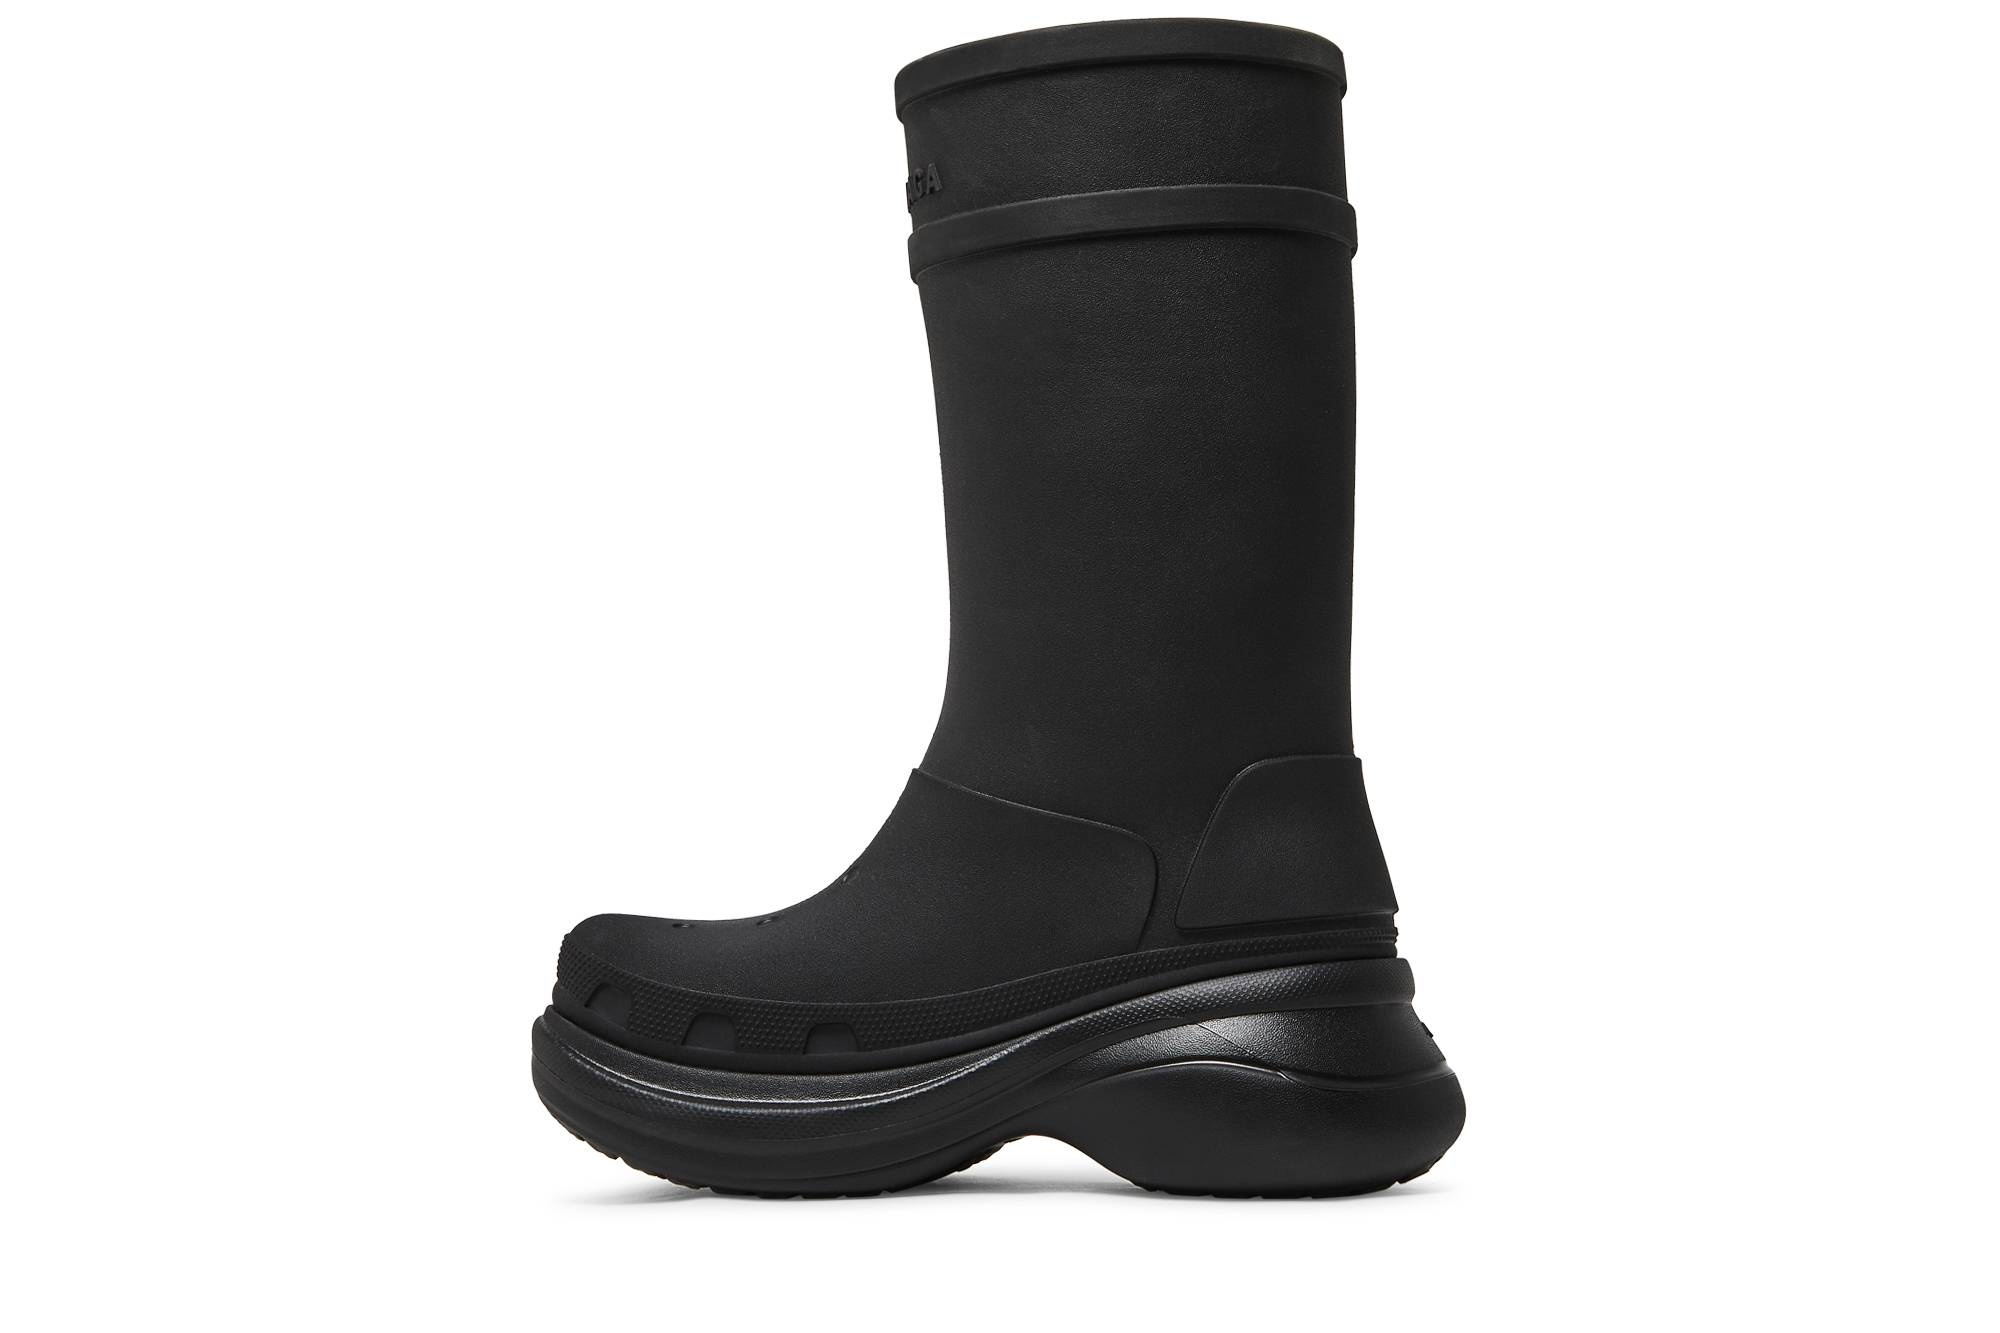 Crocs x Balenciaga Clog Boot 2.0 'Black' - 3